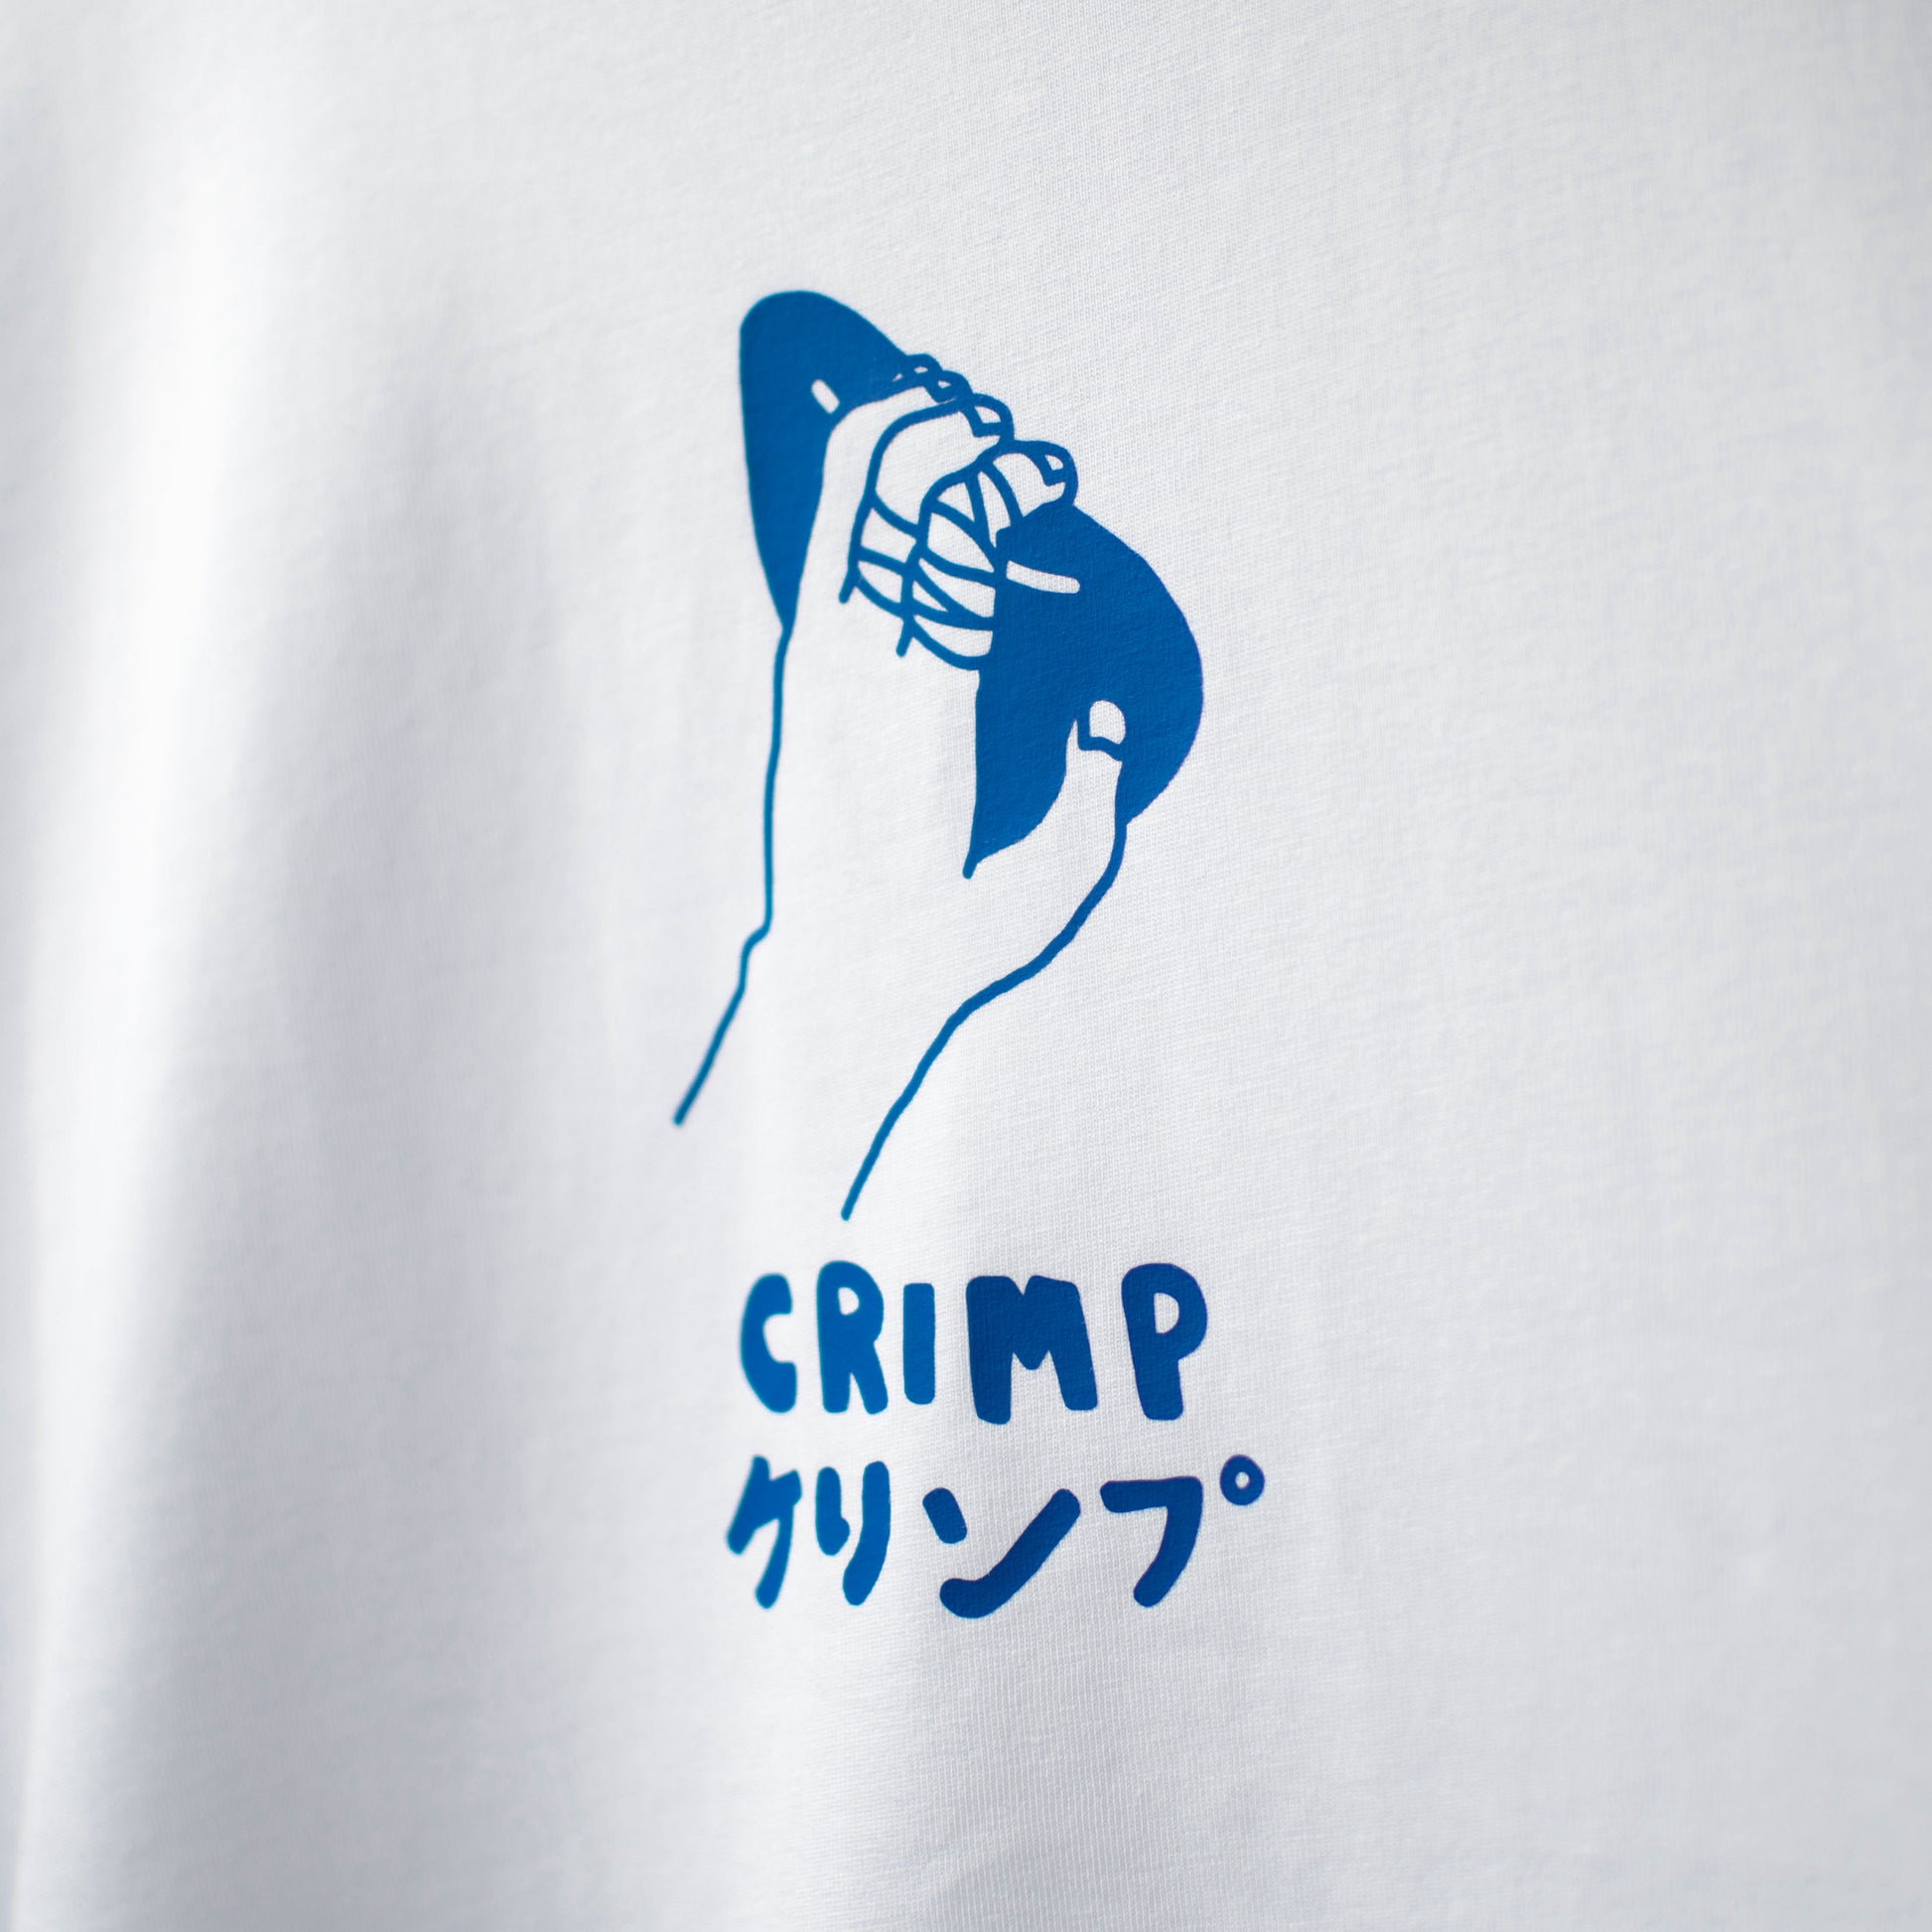 crimp climbing shirt